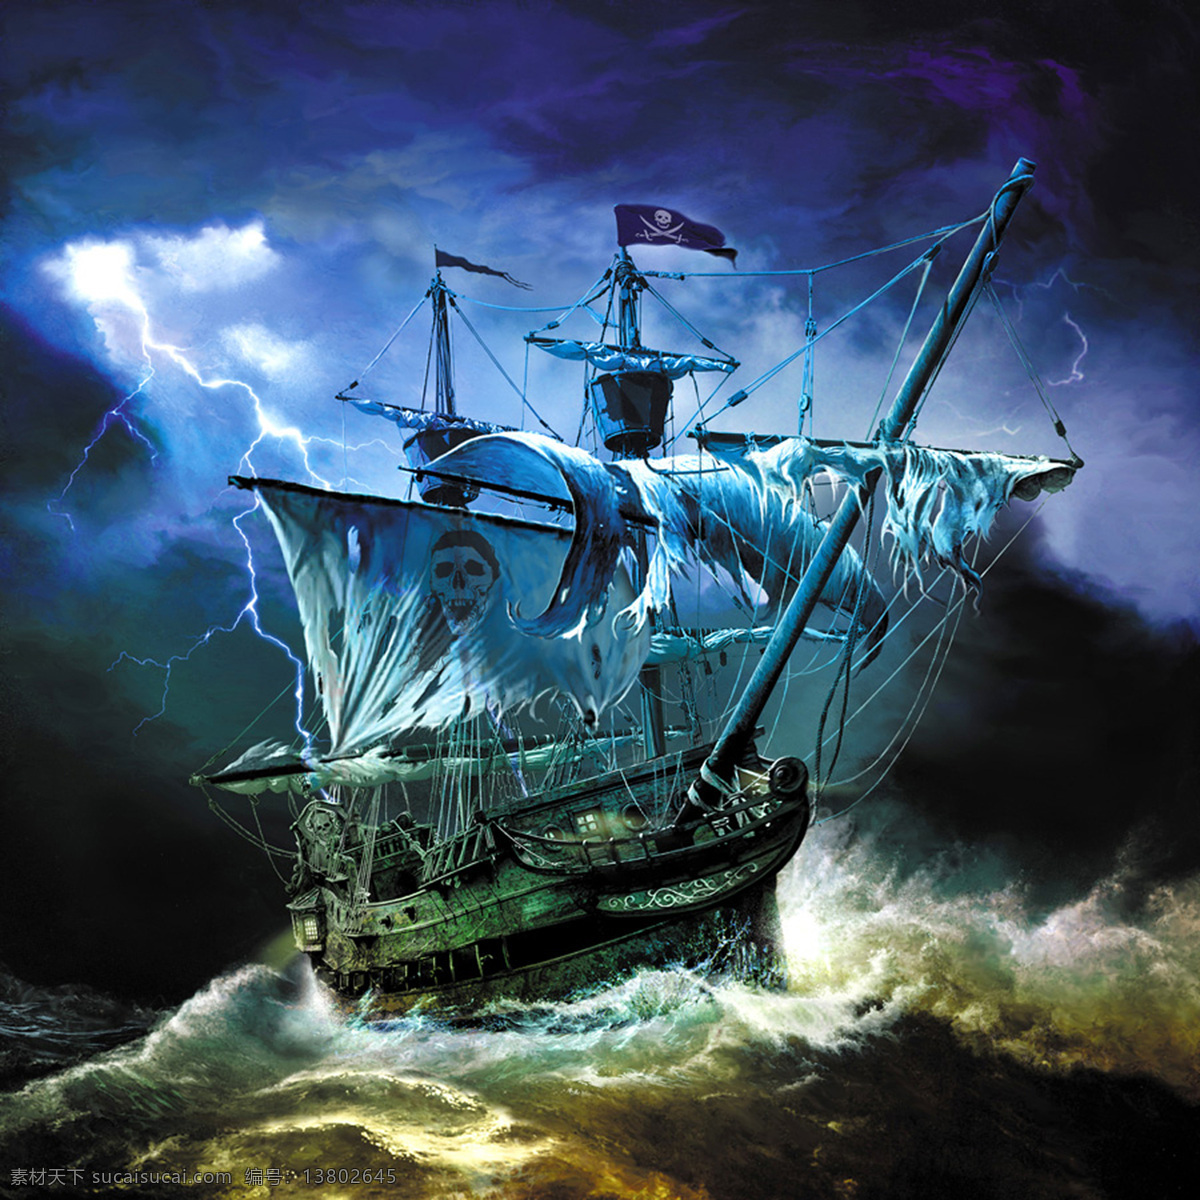 暴风雨 中 海盗船 中海 盗船图片 暴风 雨 海盗船图片 船舶 渔船 海盗 油画 海盗油画 文化艺术 绘画书法